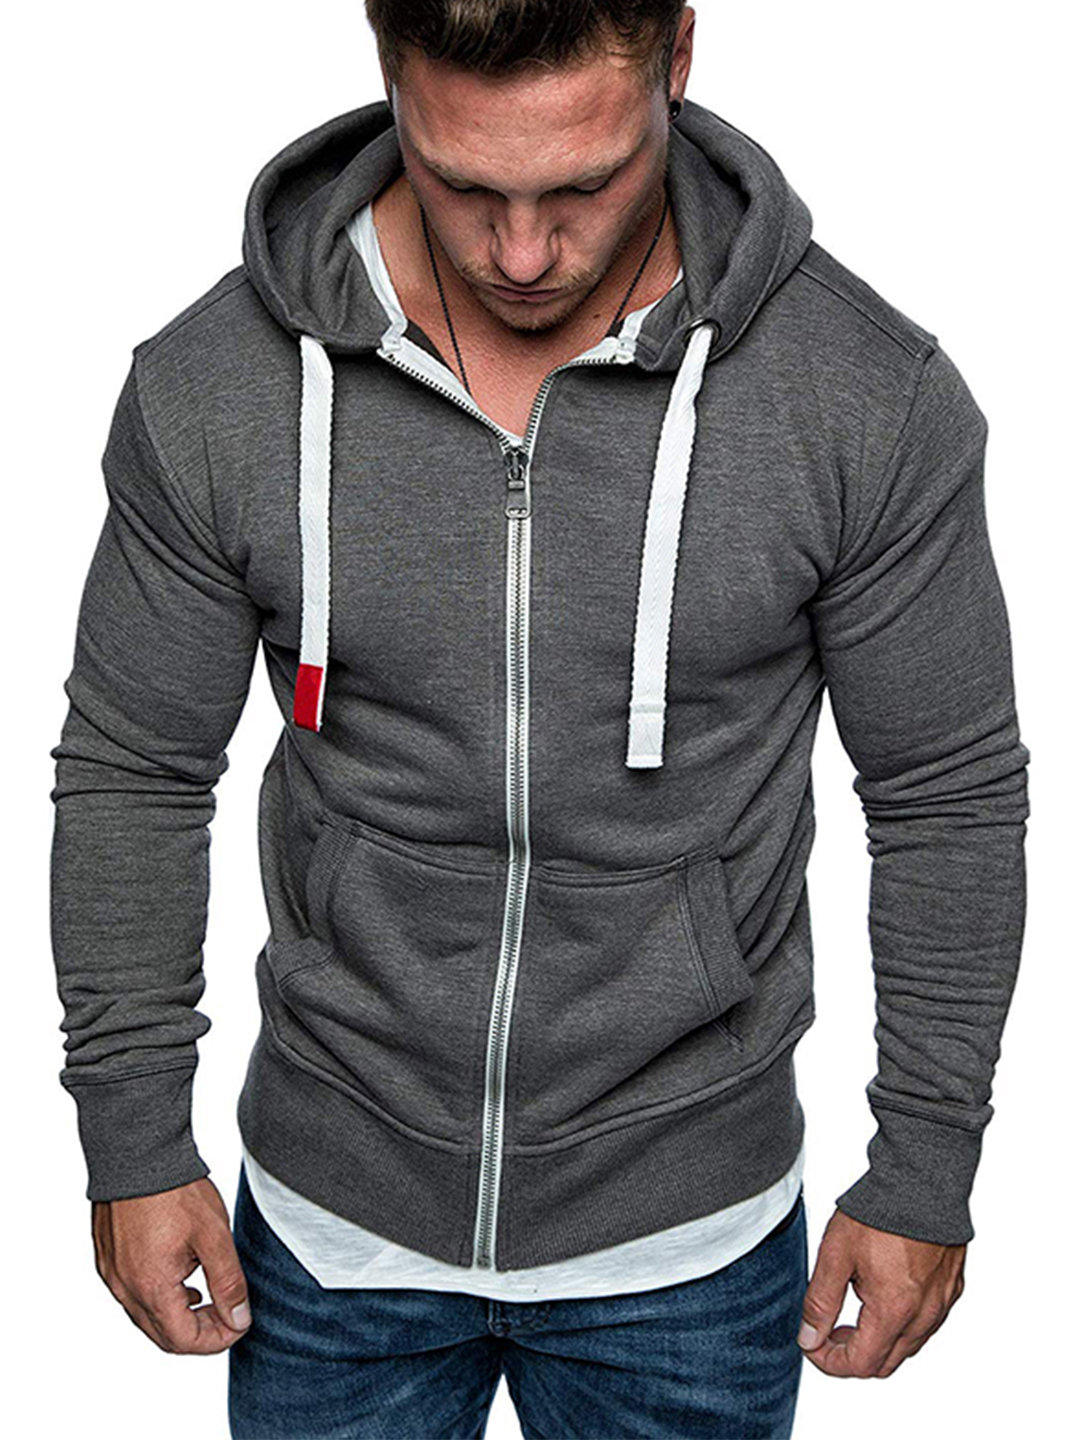 Men's Full Zip Solid Color Zipper Front Pocket Hooded